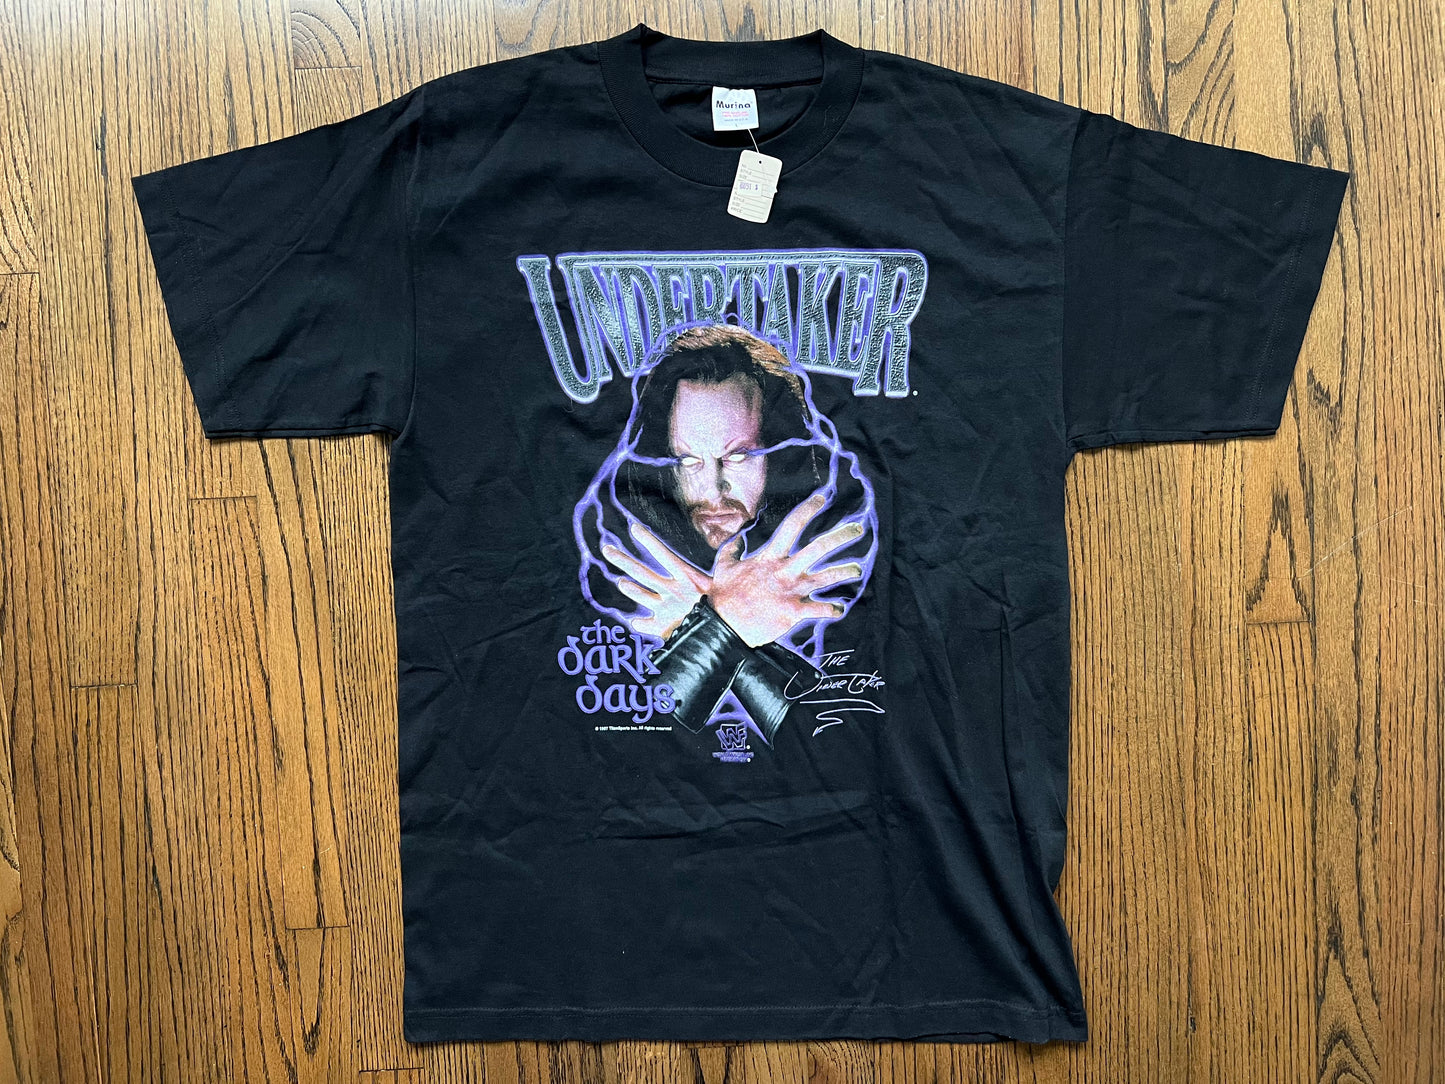 1997 WWF Undertaker shirt with original price tag